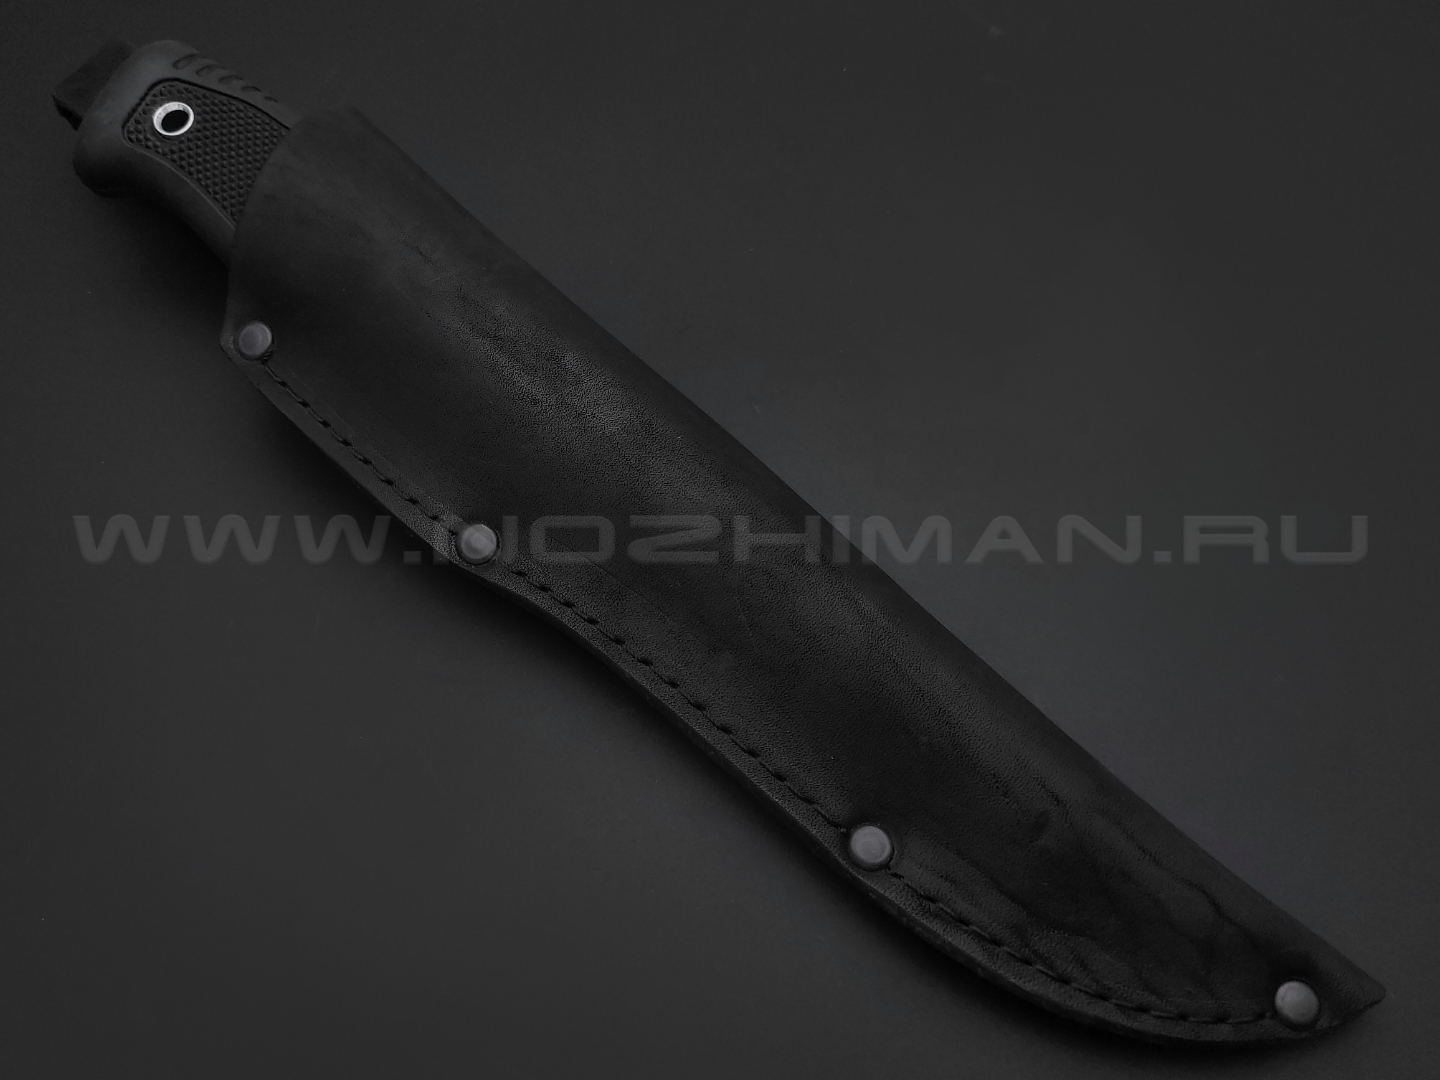 Титов и Солдатова нож №18 Казак-1 сталь D2 полировка, рукоять резина